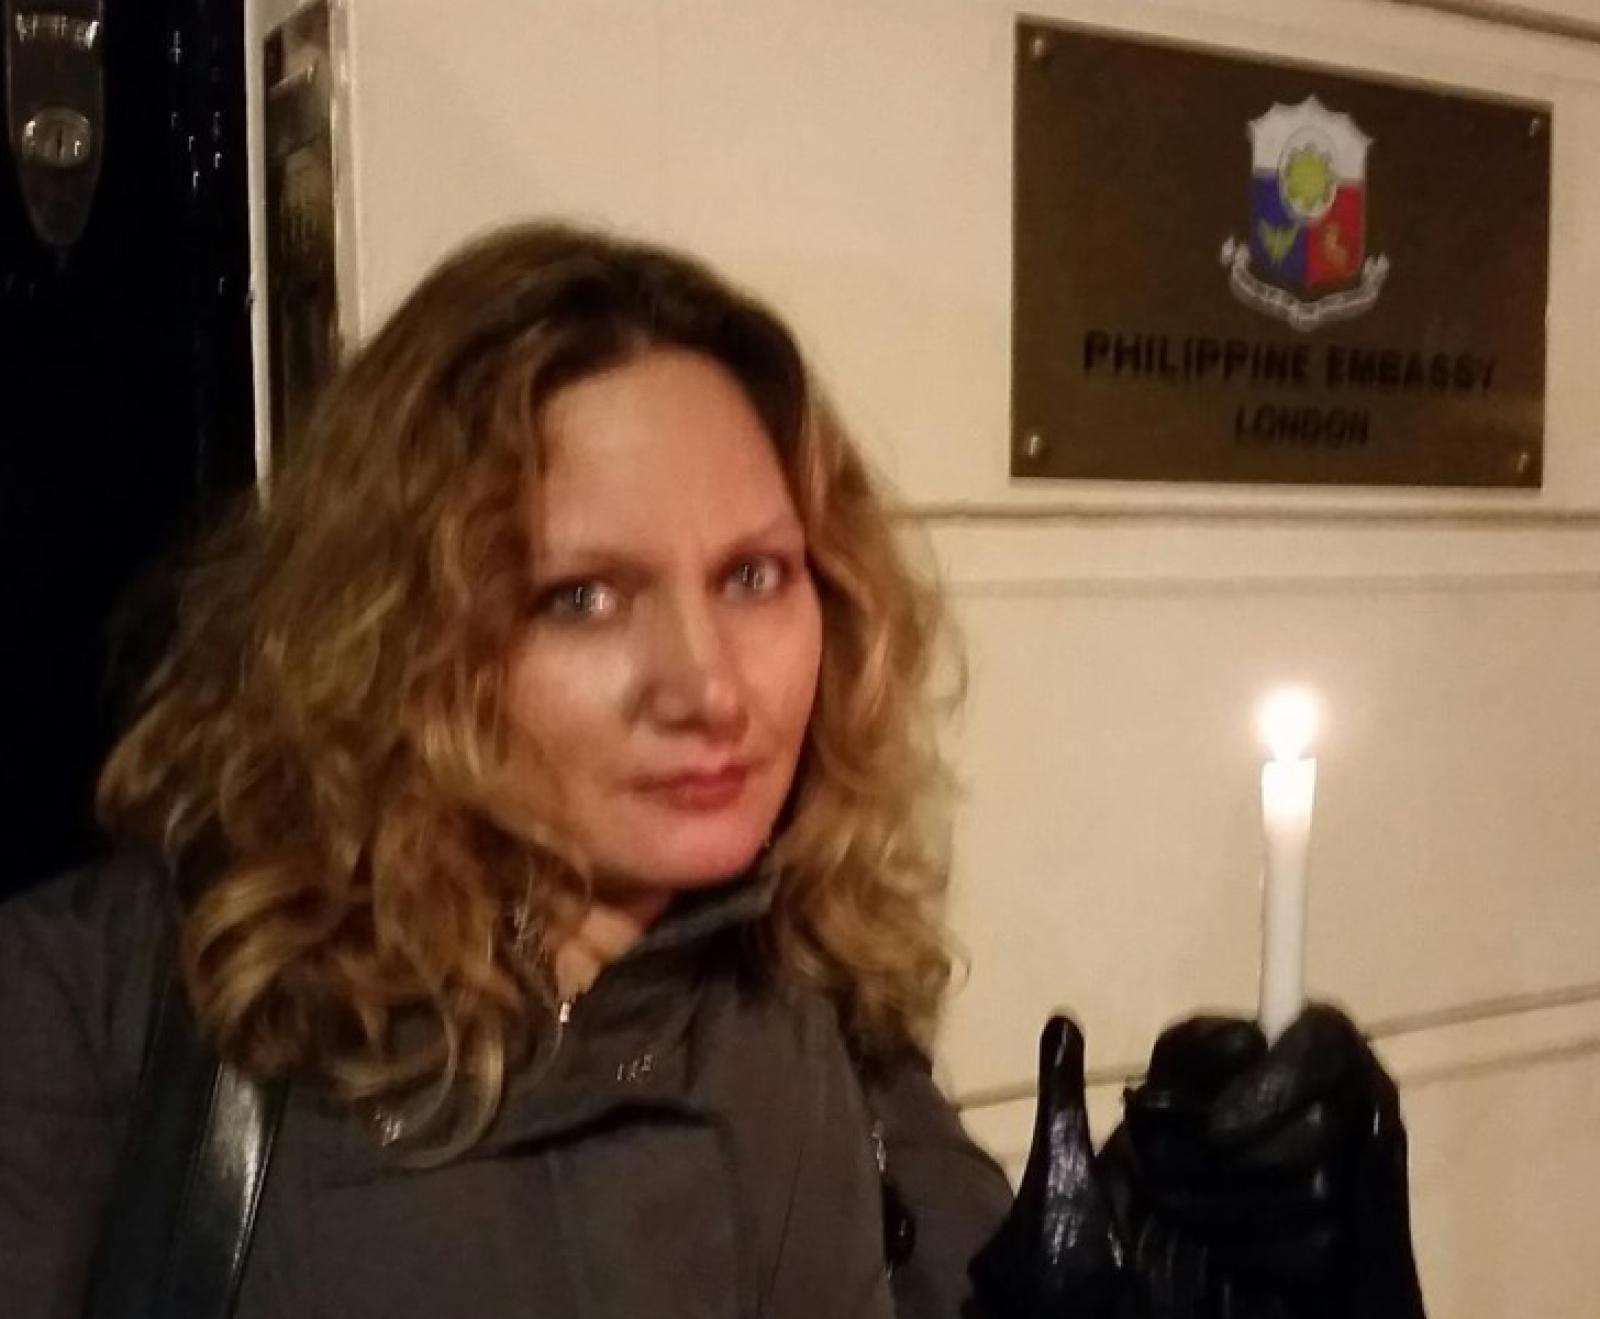 Un grand nombre de personnes ont montré leur soutien à la campagne Un million de chandelles hors de rassemblements organisés. Elisabeth Witchel, du CPJ, a fait briller une flamme de solidarité à l’ambassade des Philippines à Londres, au Royaume-Uni, le 23 novembre 2014